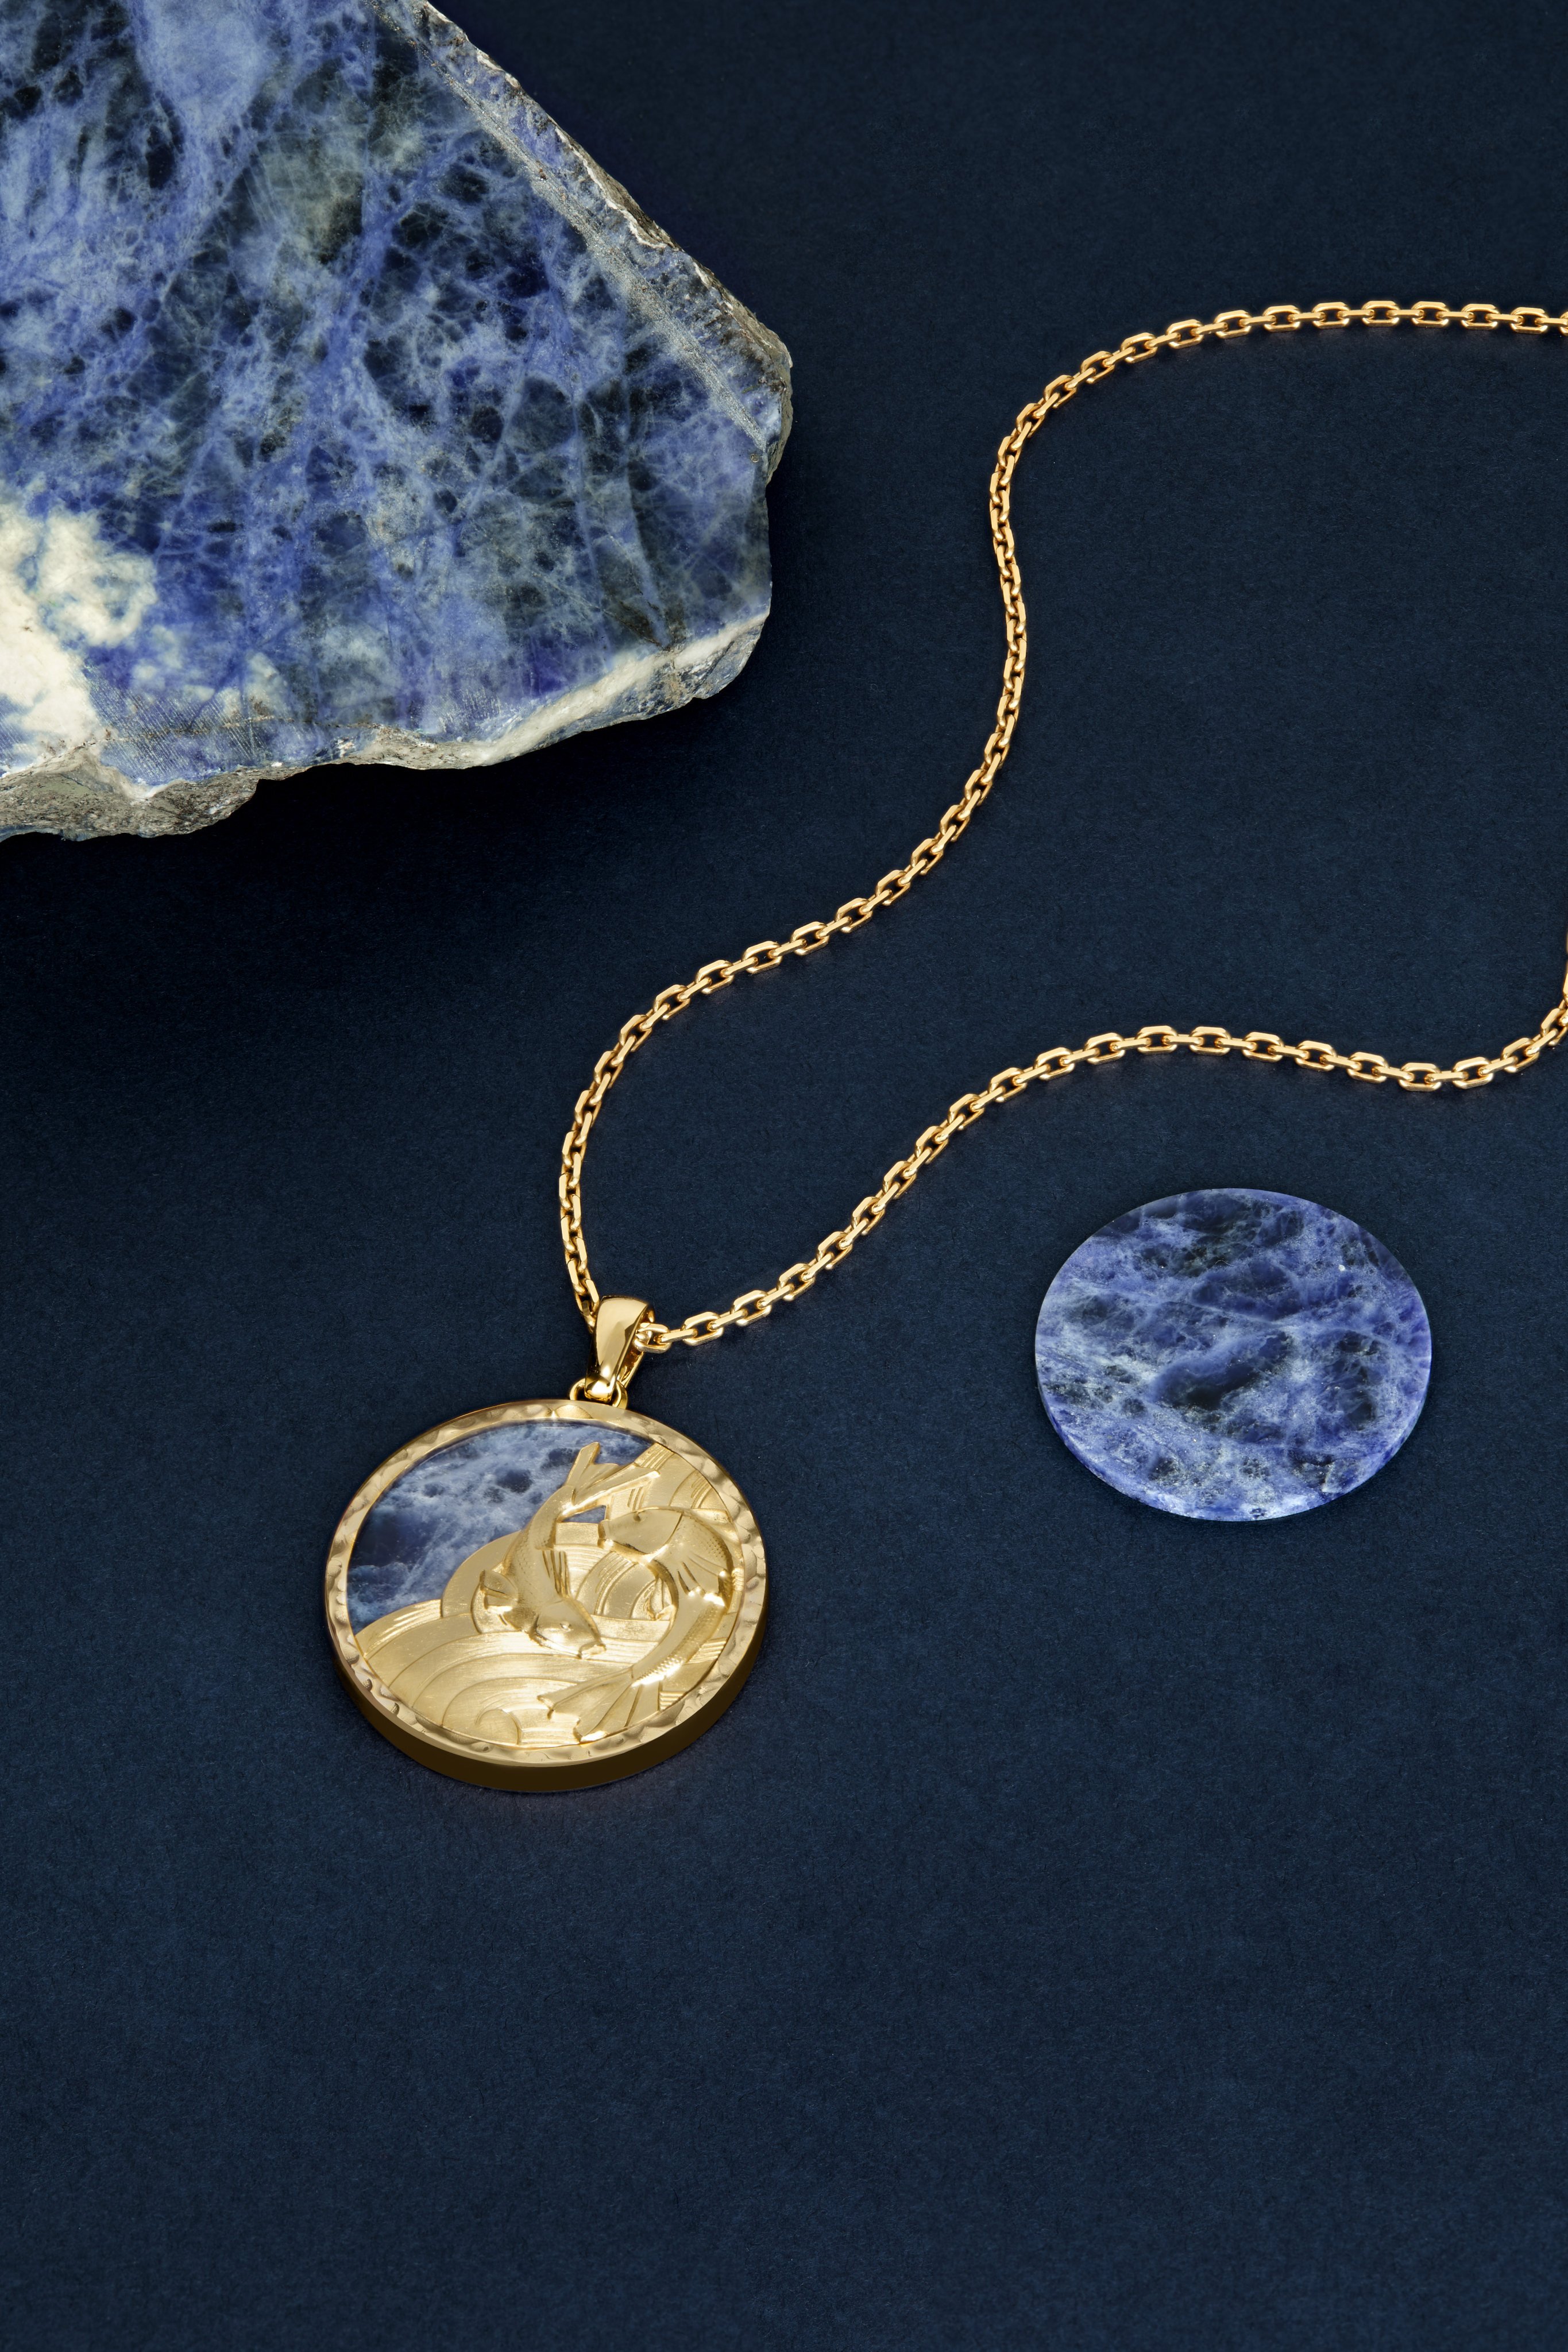 Van Cleef & Arpels Zodiaque Piscium necklace, with its sodalite background evoking the ocean depths. Photo: Van Cleef & Arpels